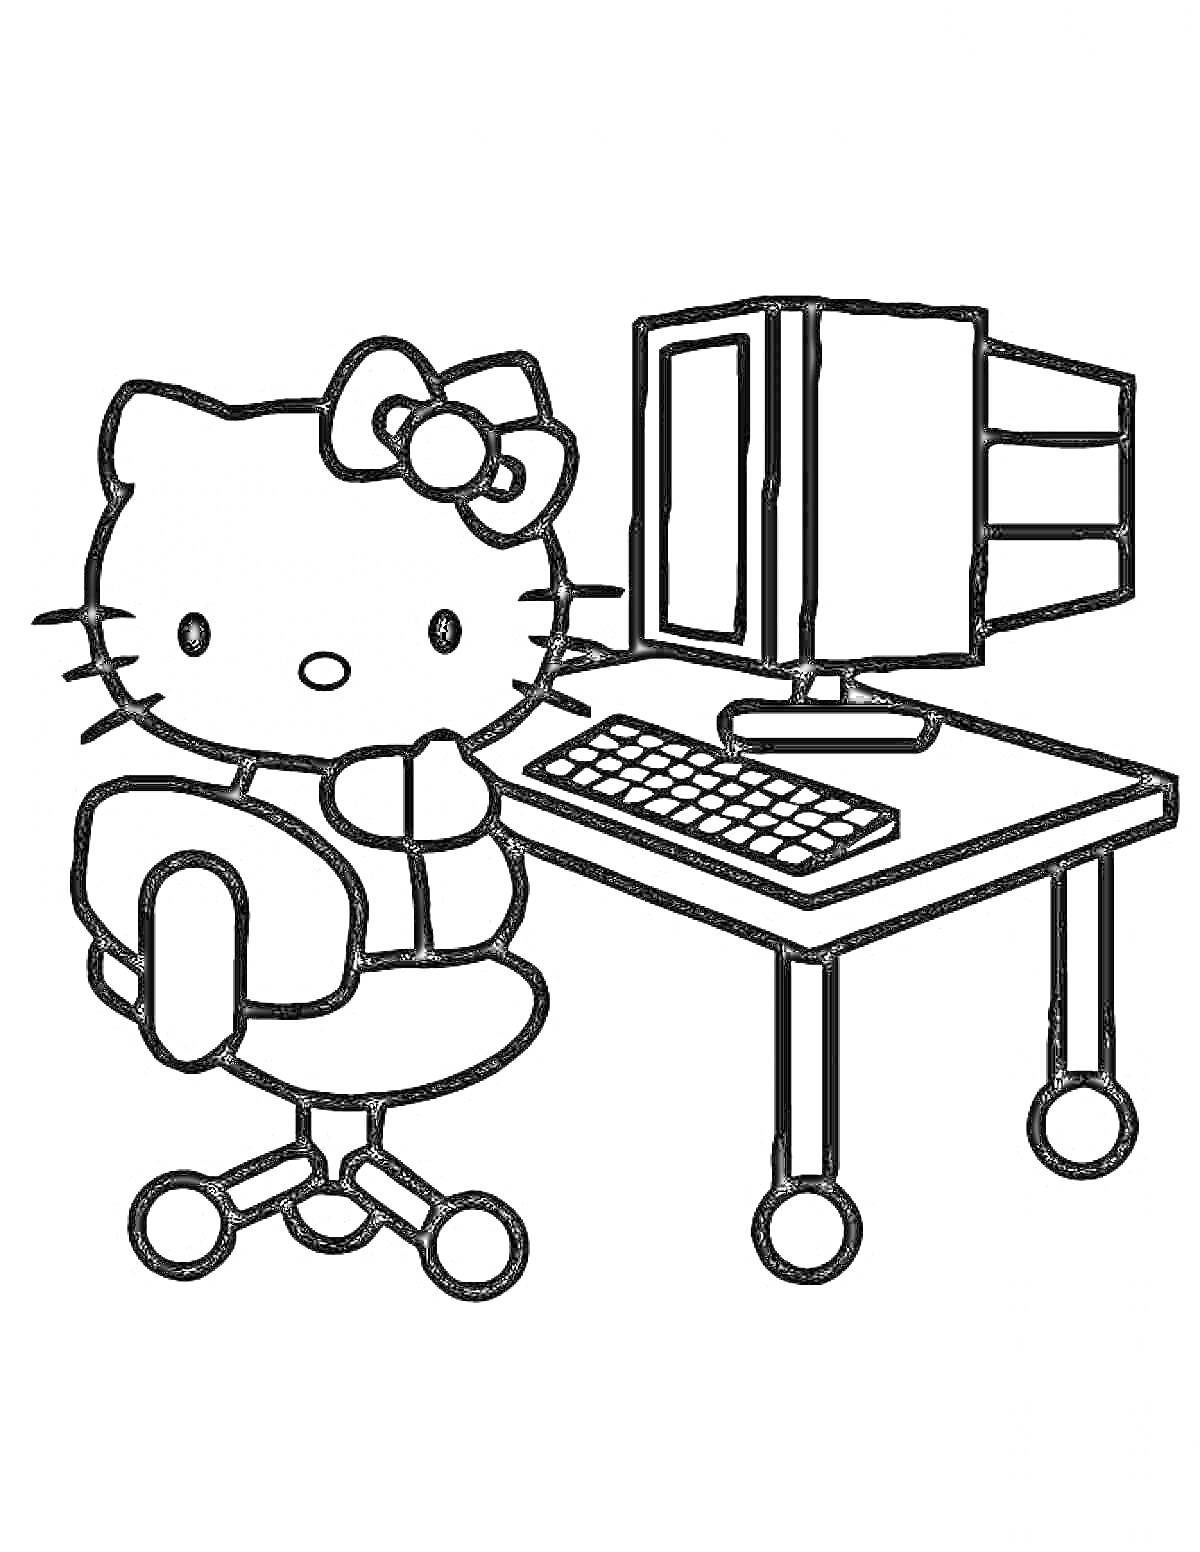 Котёнок на стуле за компьютерным столом с компьютером и клавиатурой